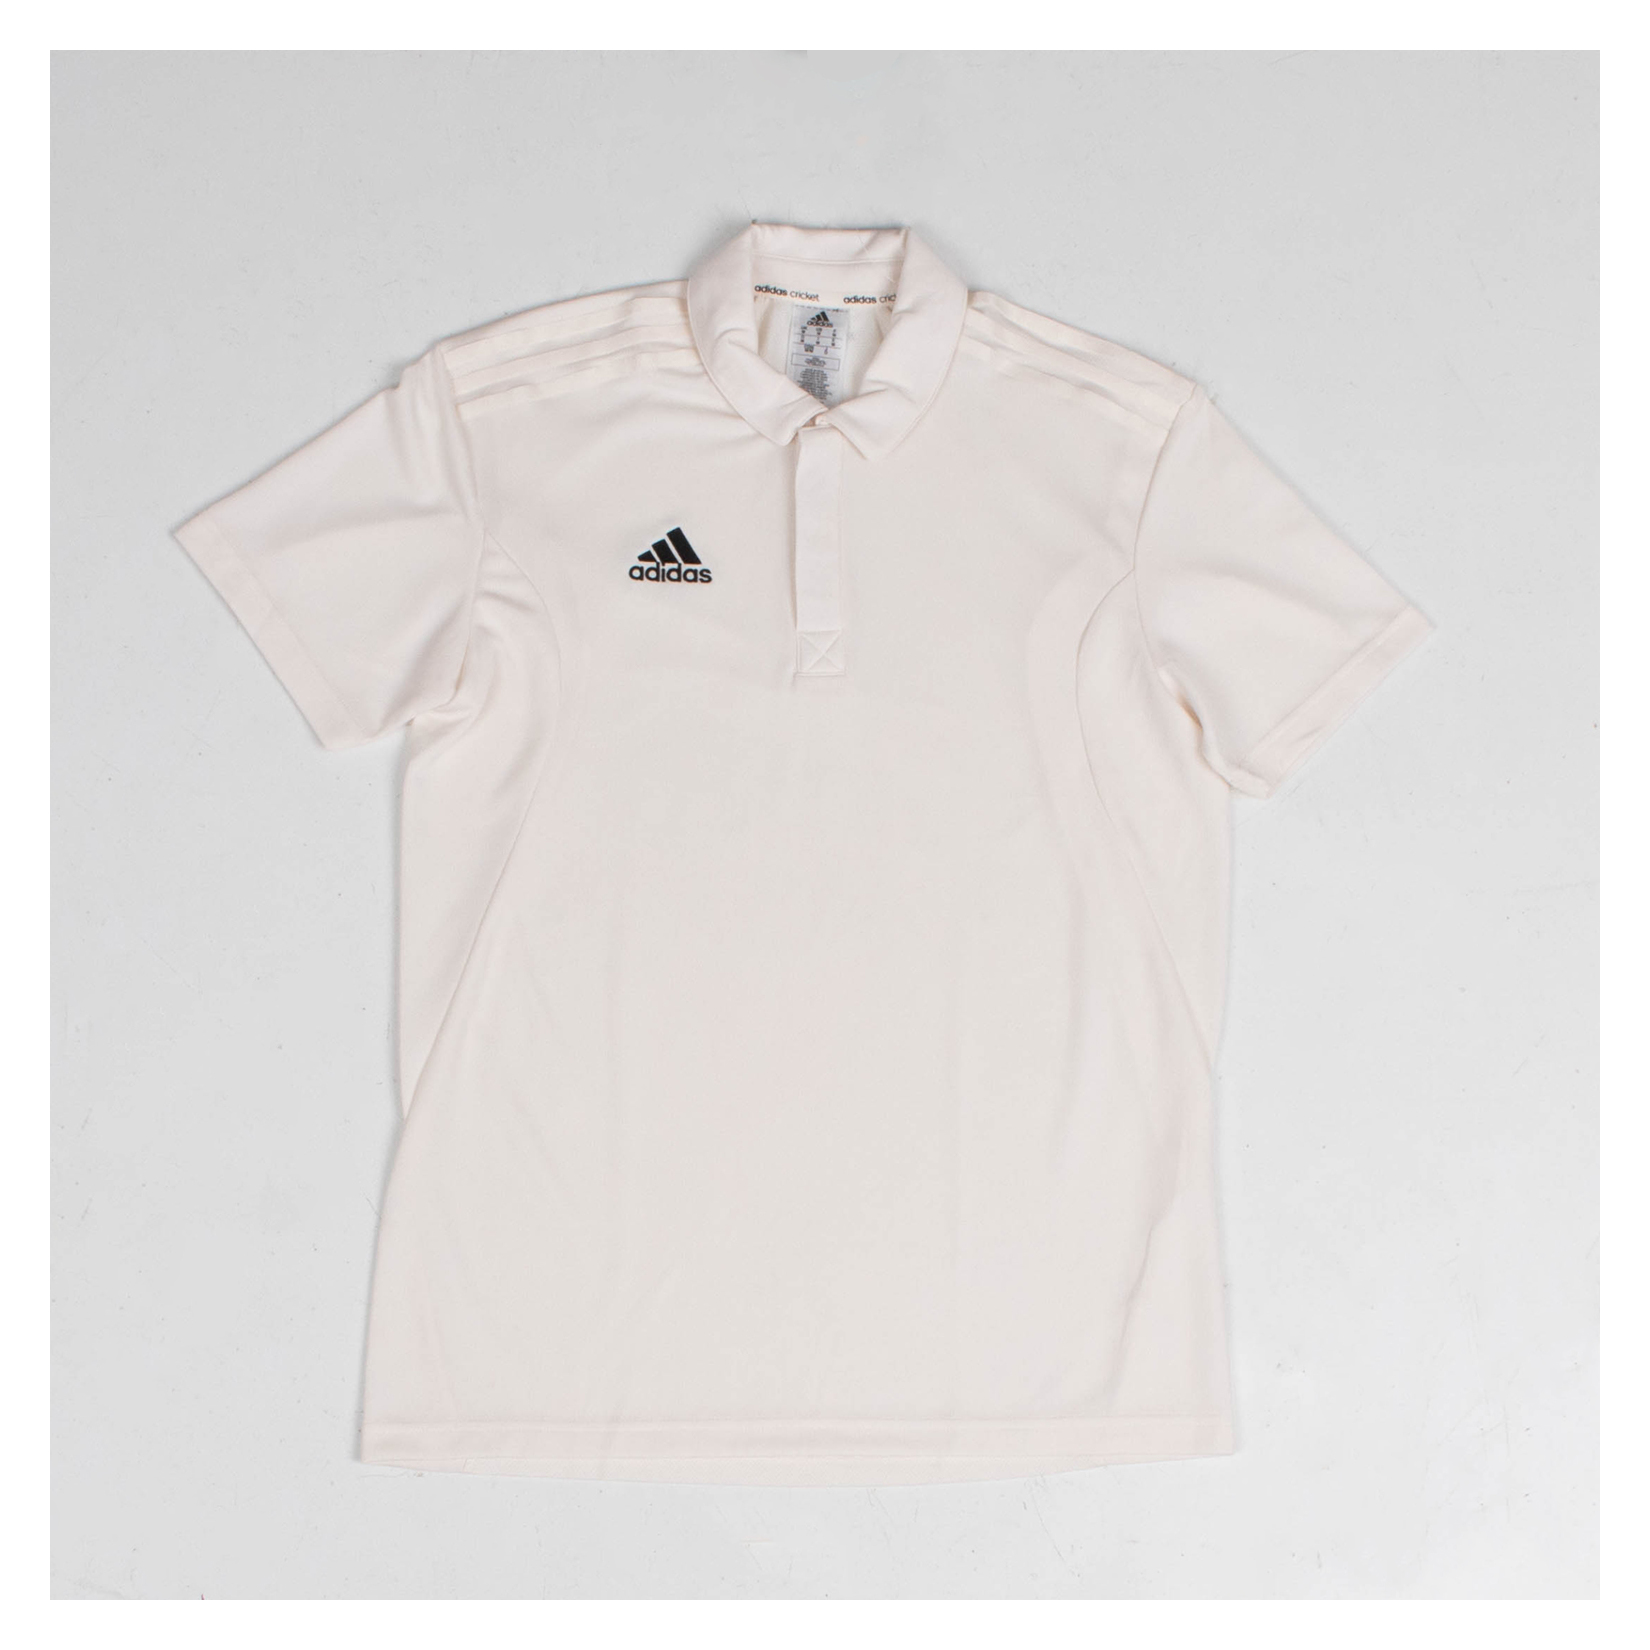 adidas Elite Short Sleeve Cricket Shirt - Kitlocker.com